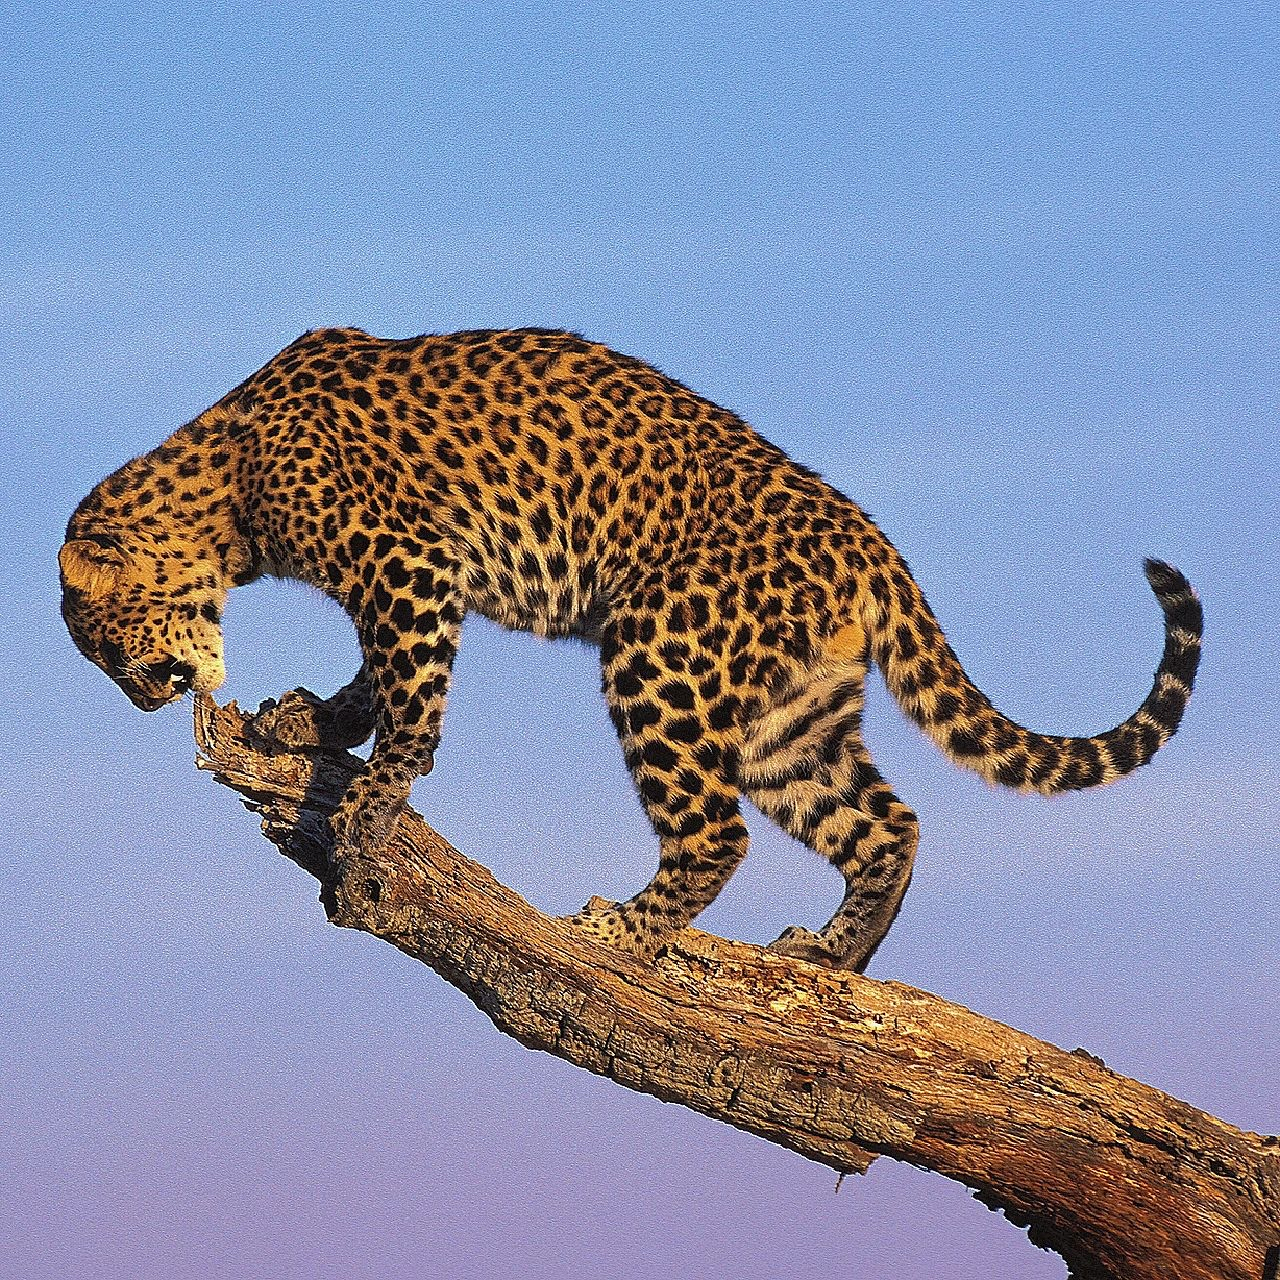 十大灭绝的豹子图片